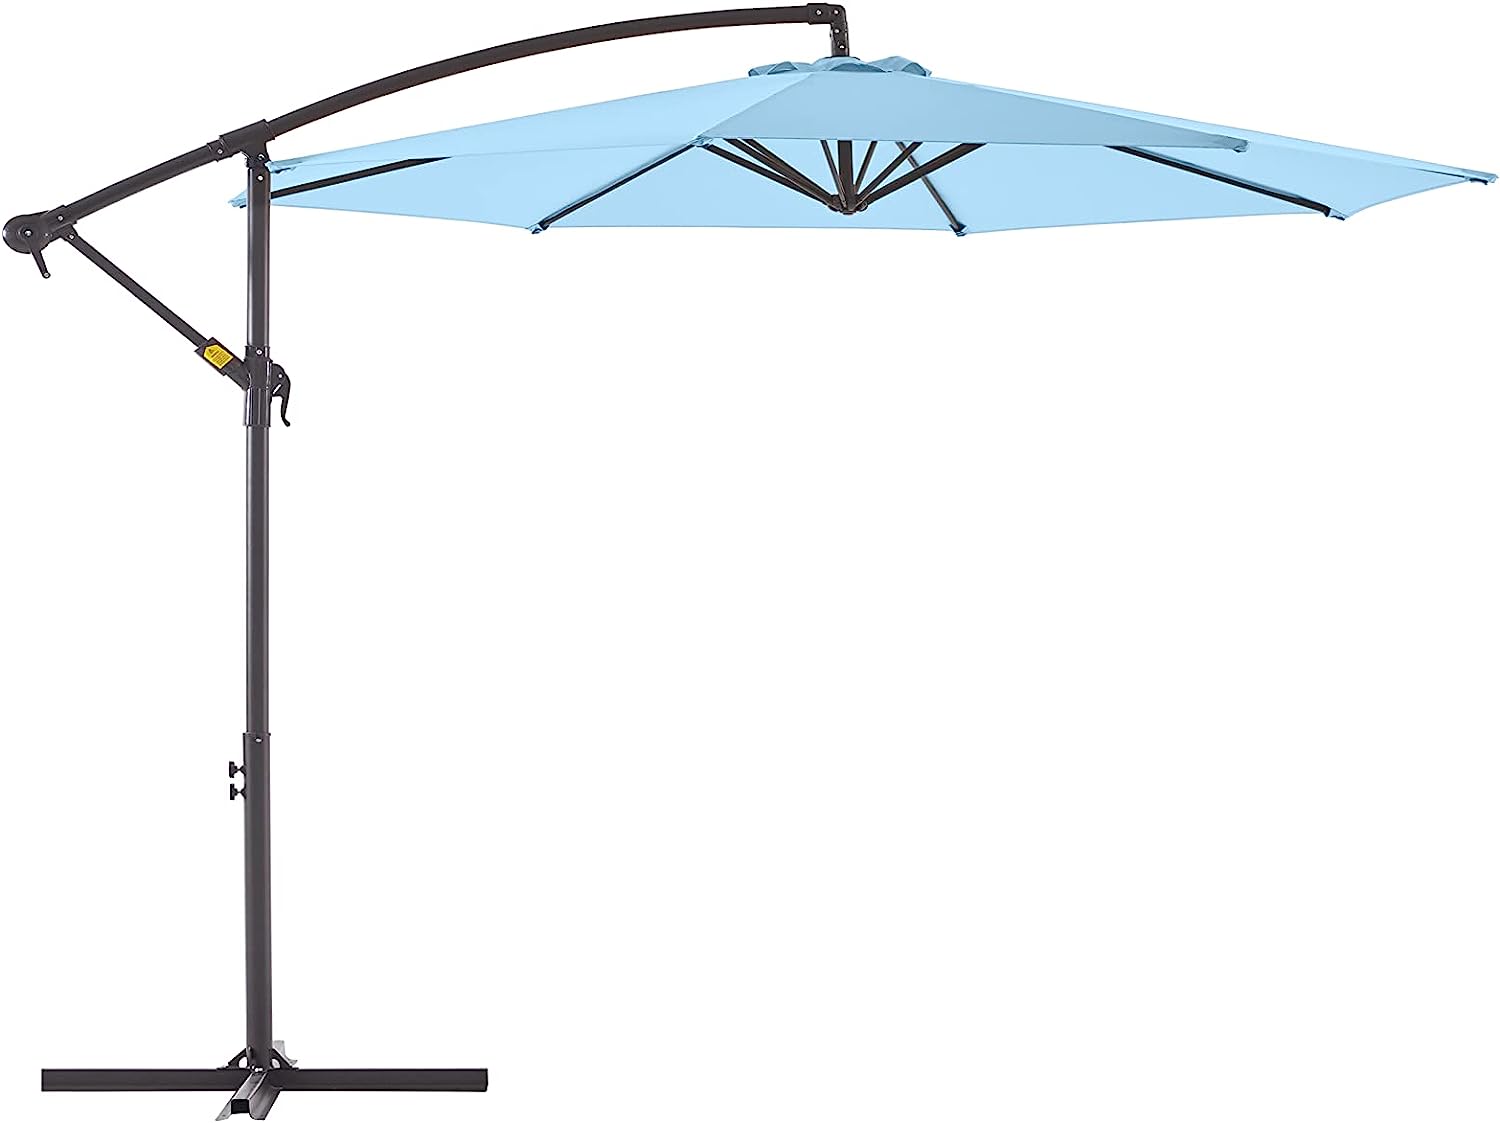 Outdoor Cantilever Umbrella Offset 